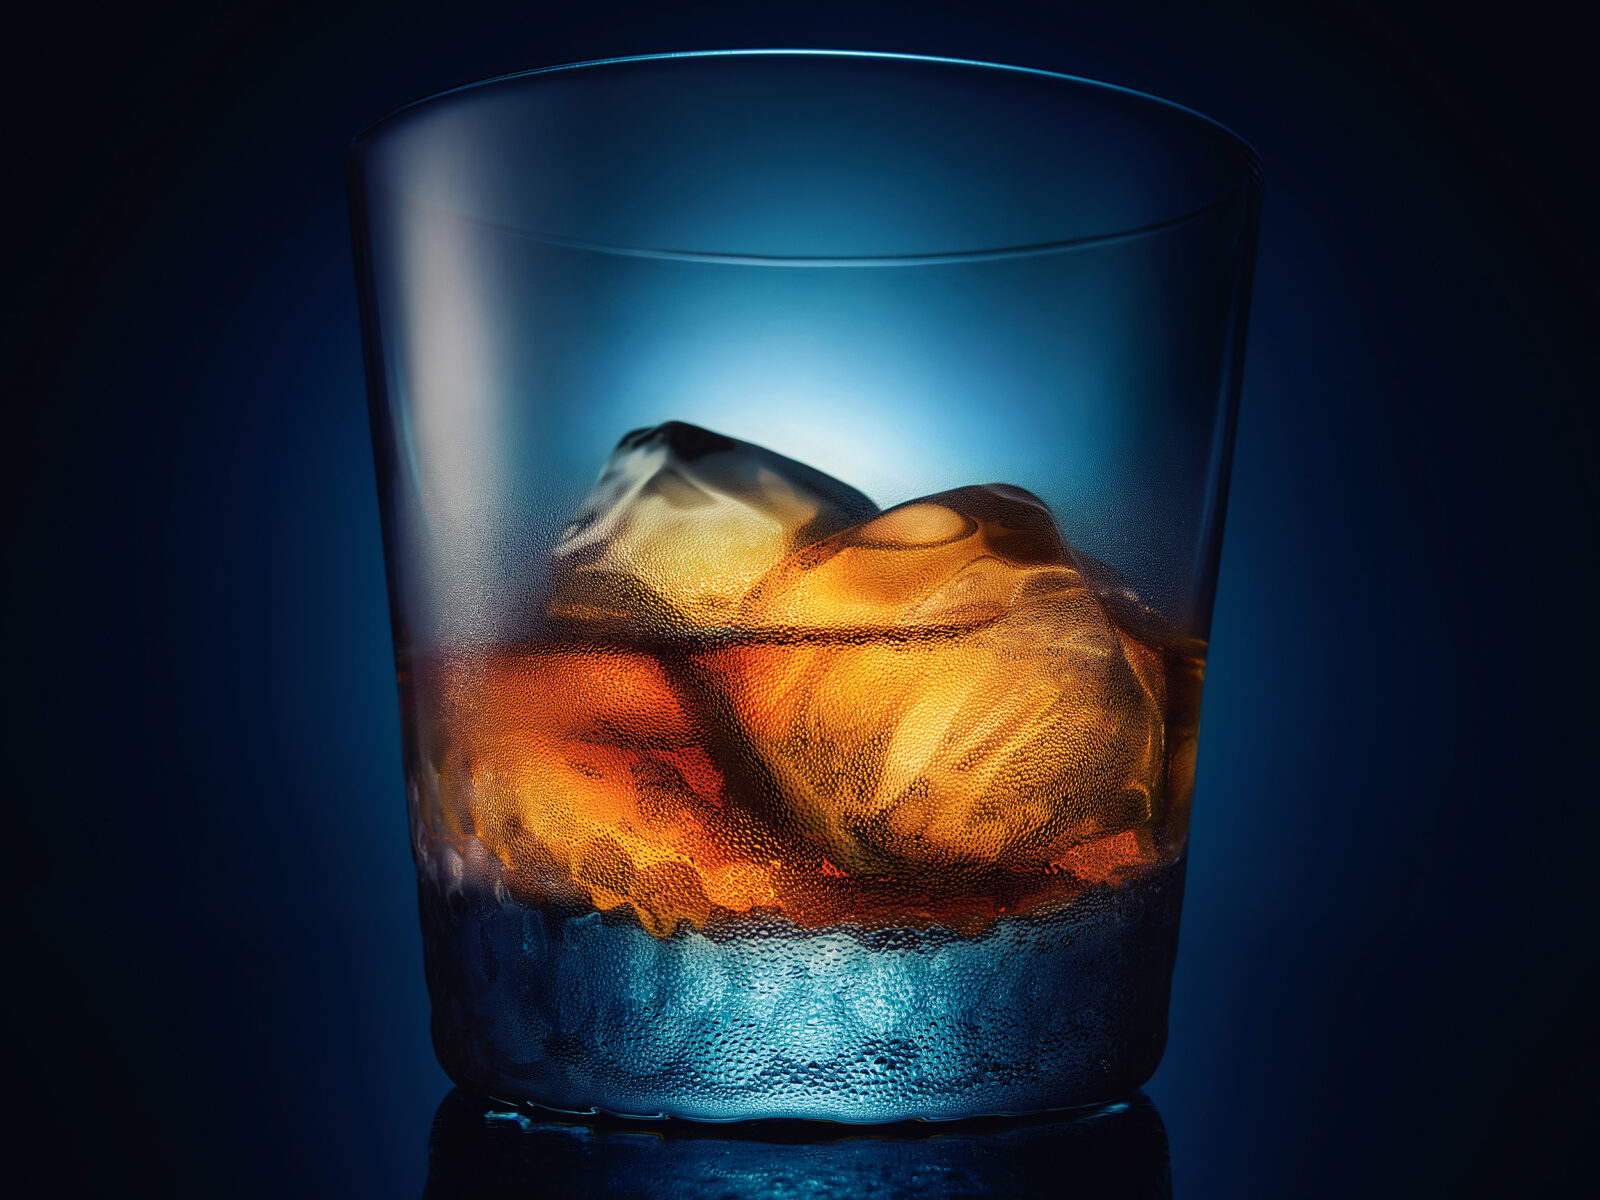 Bourbon on Ice